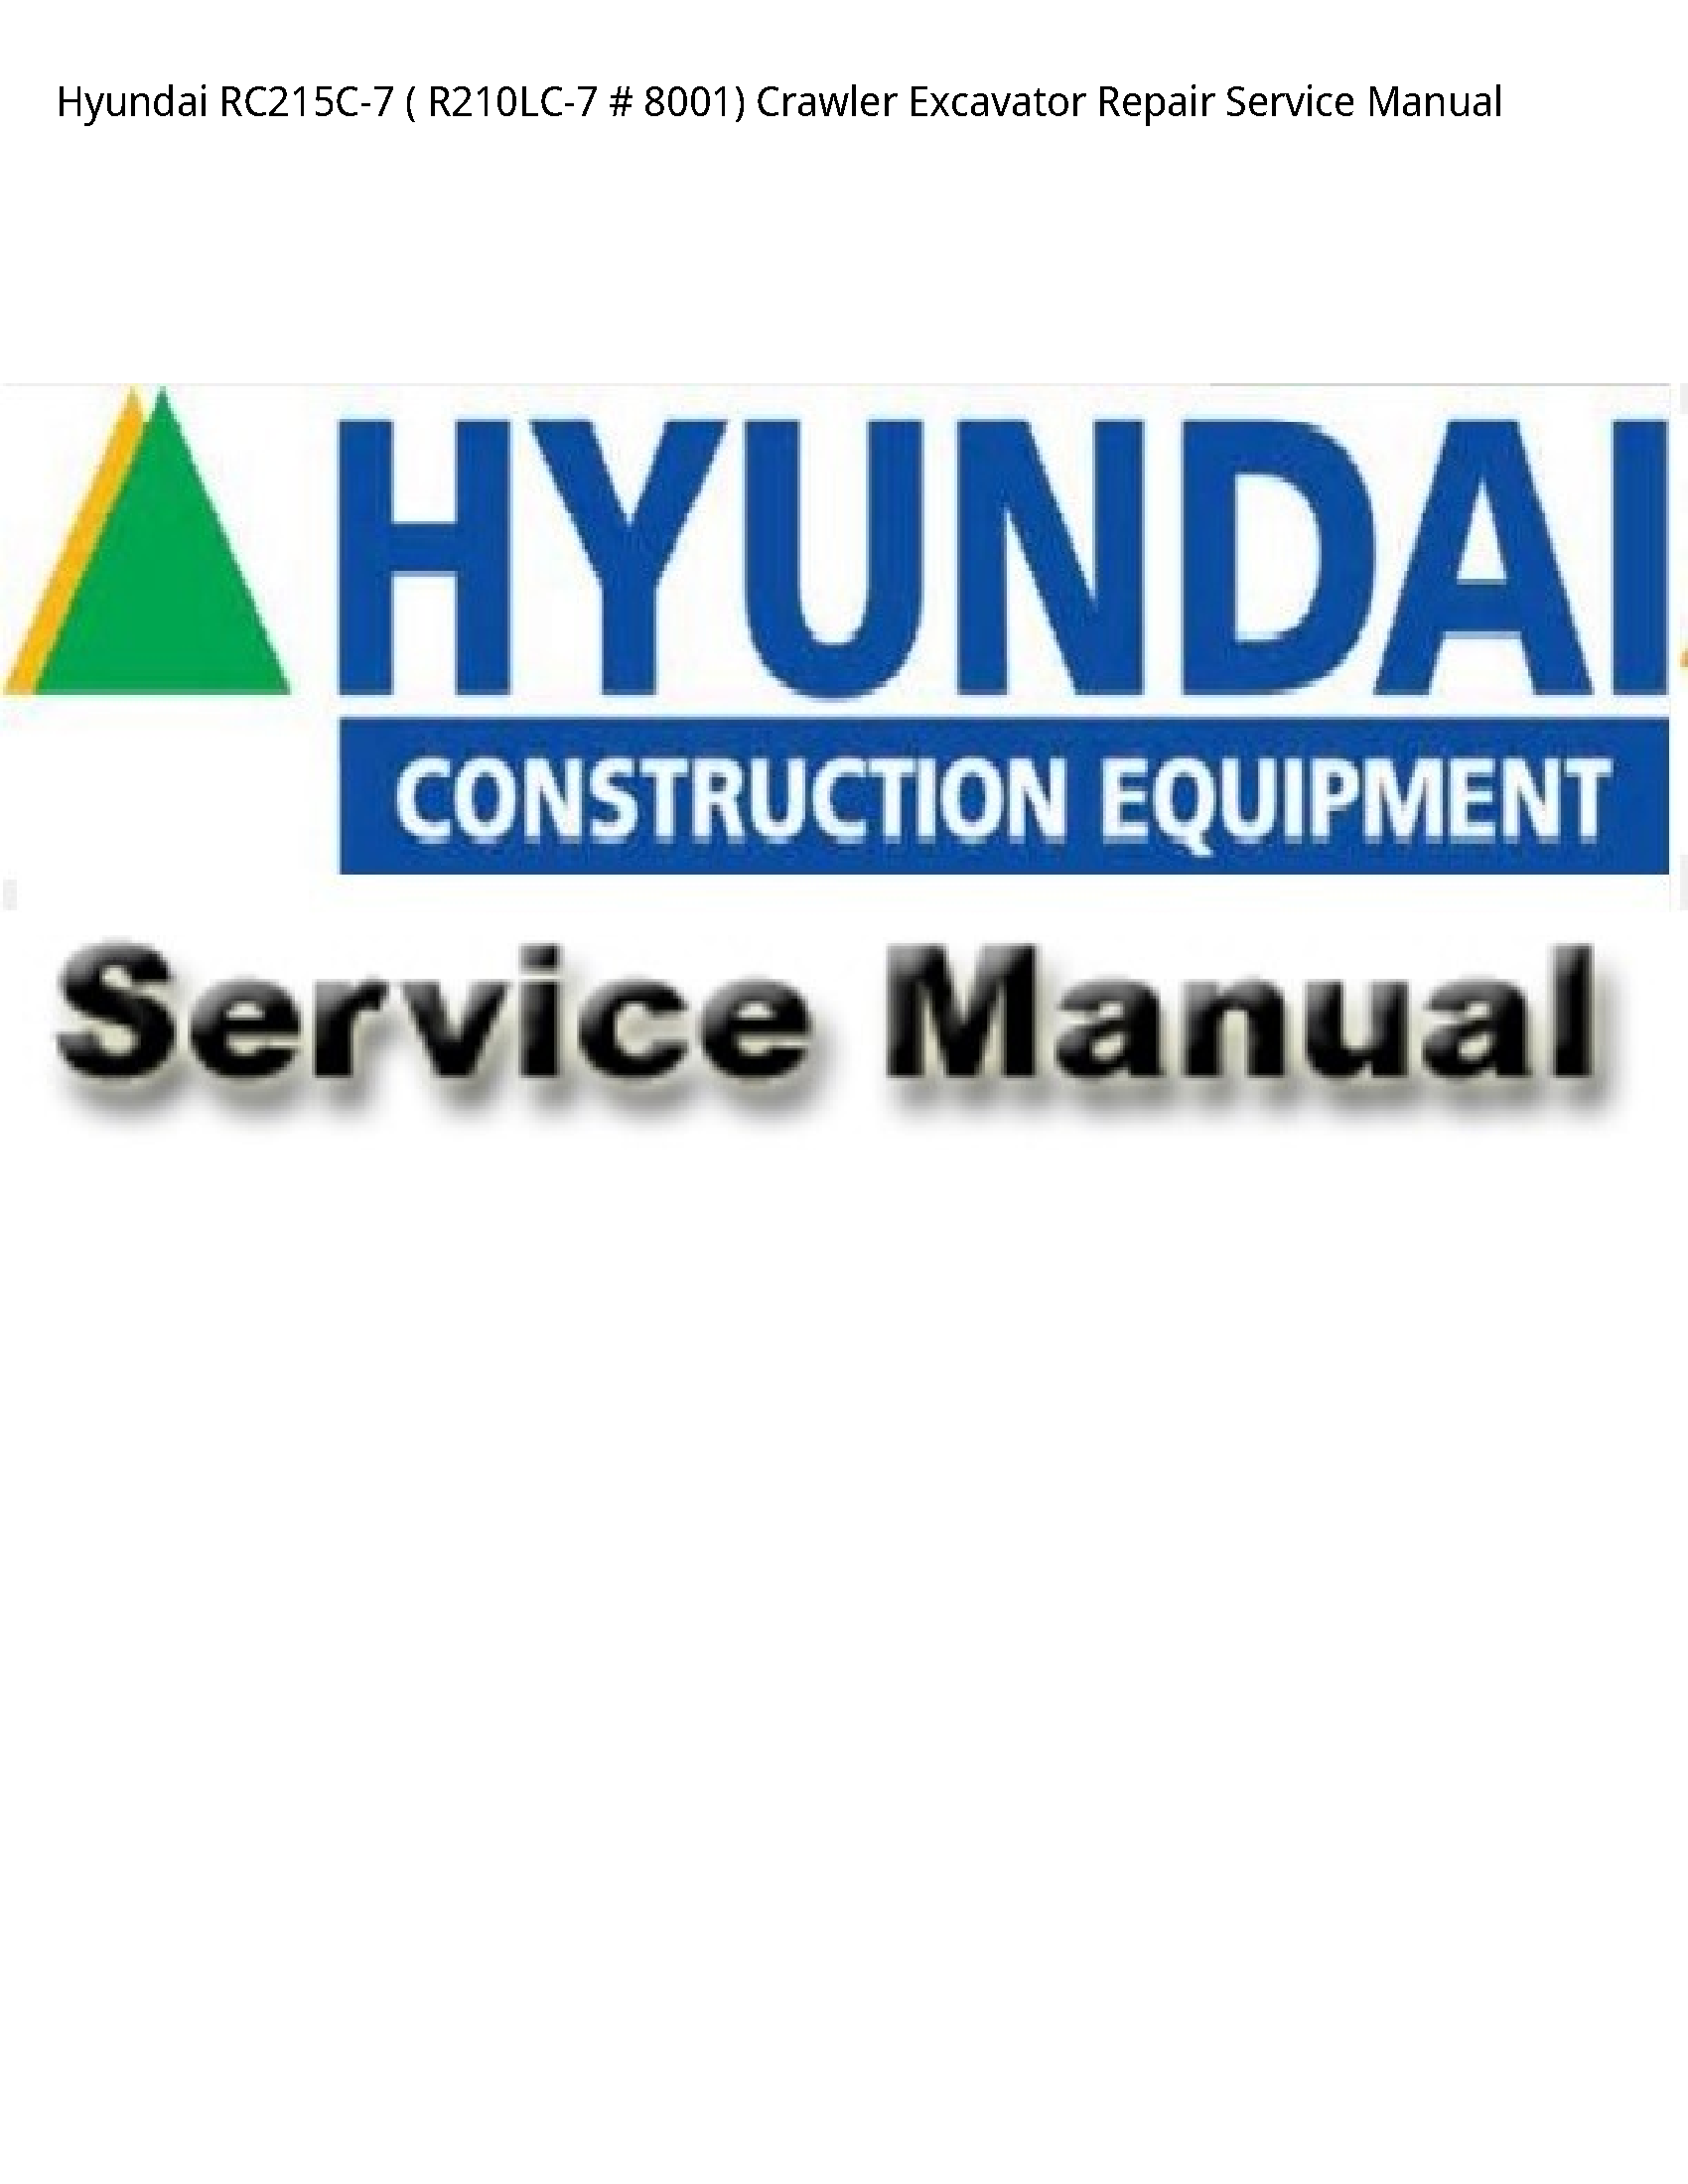 Hyundai RC215C-7 Crawler Excavator Repair Service manual